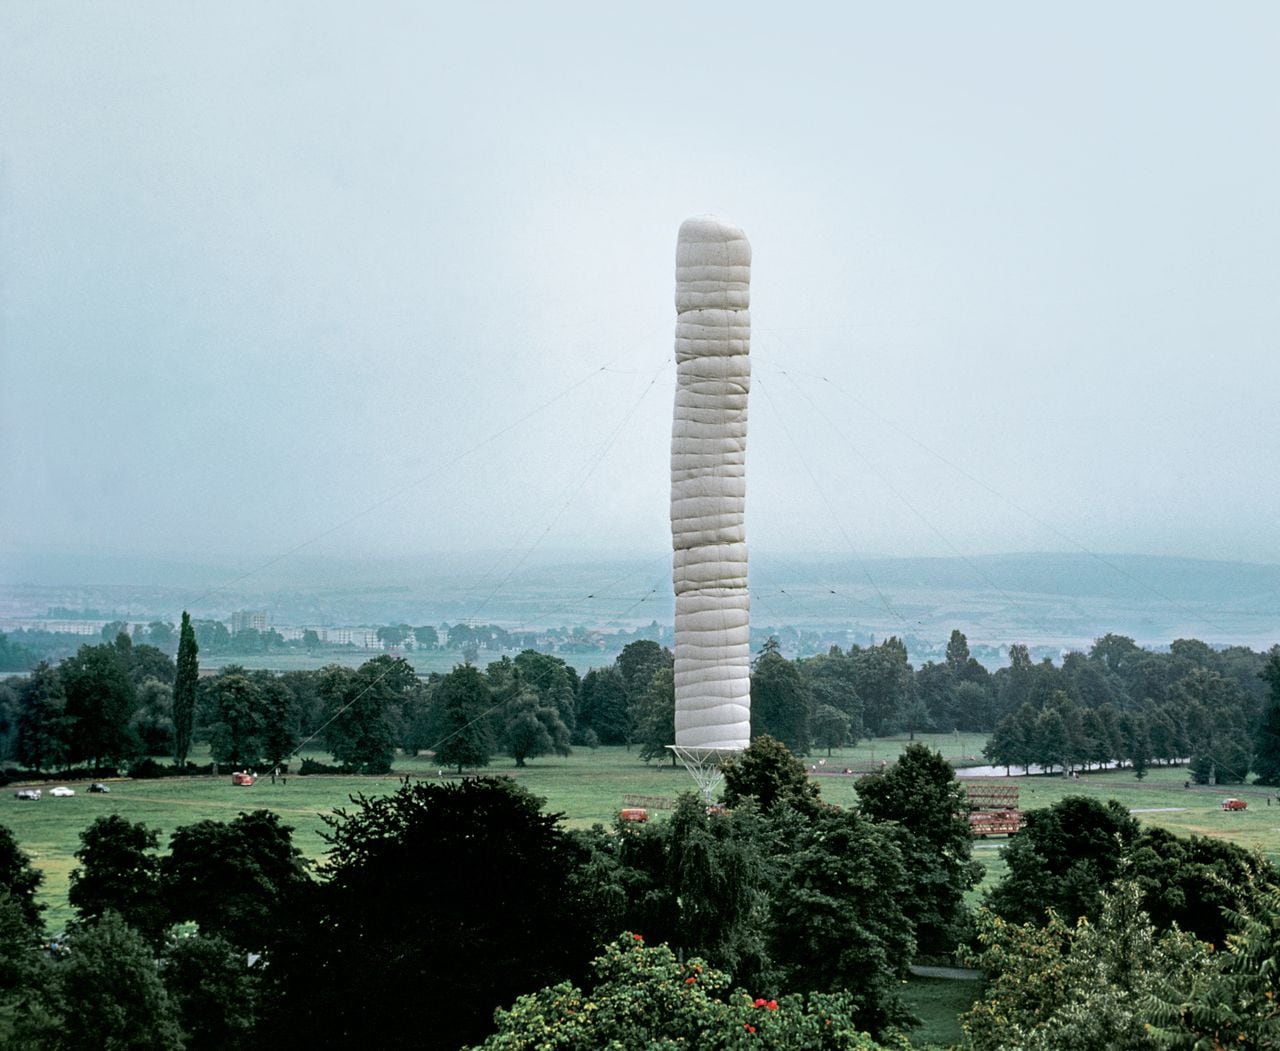 5,600 Cubicmeter Package, documenta IV, Kassel, 1967-68
—
Klaus Baum